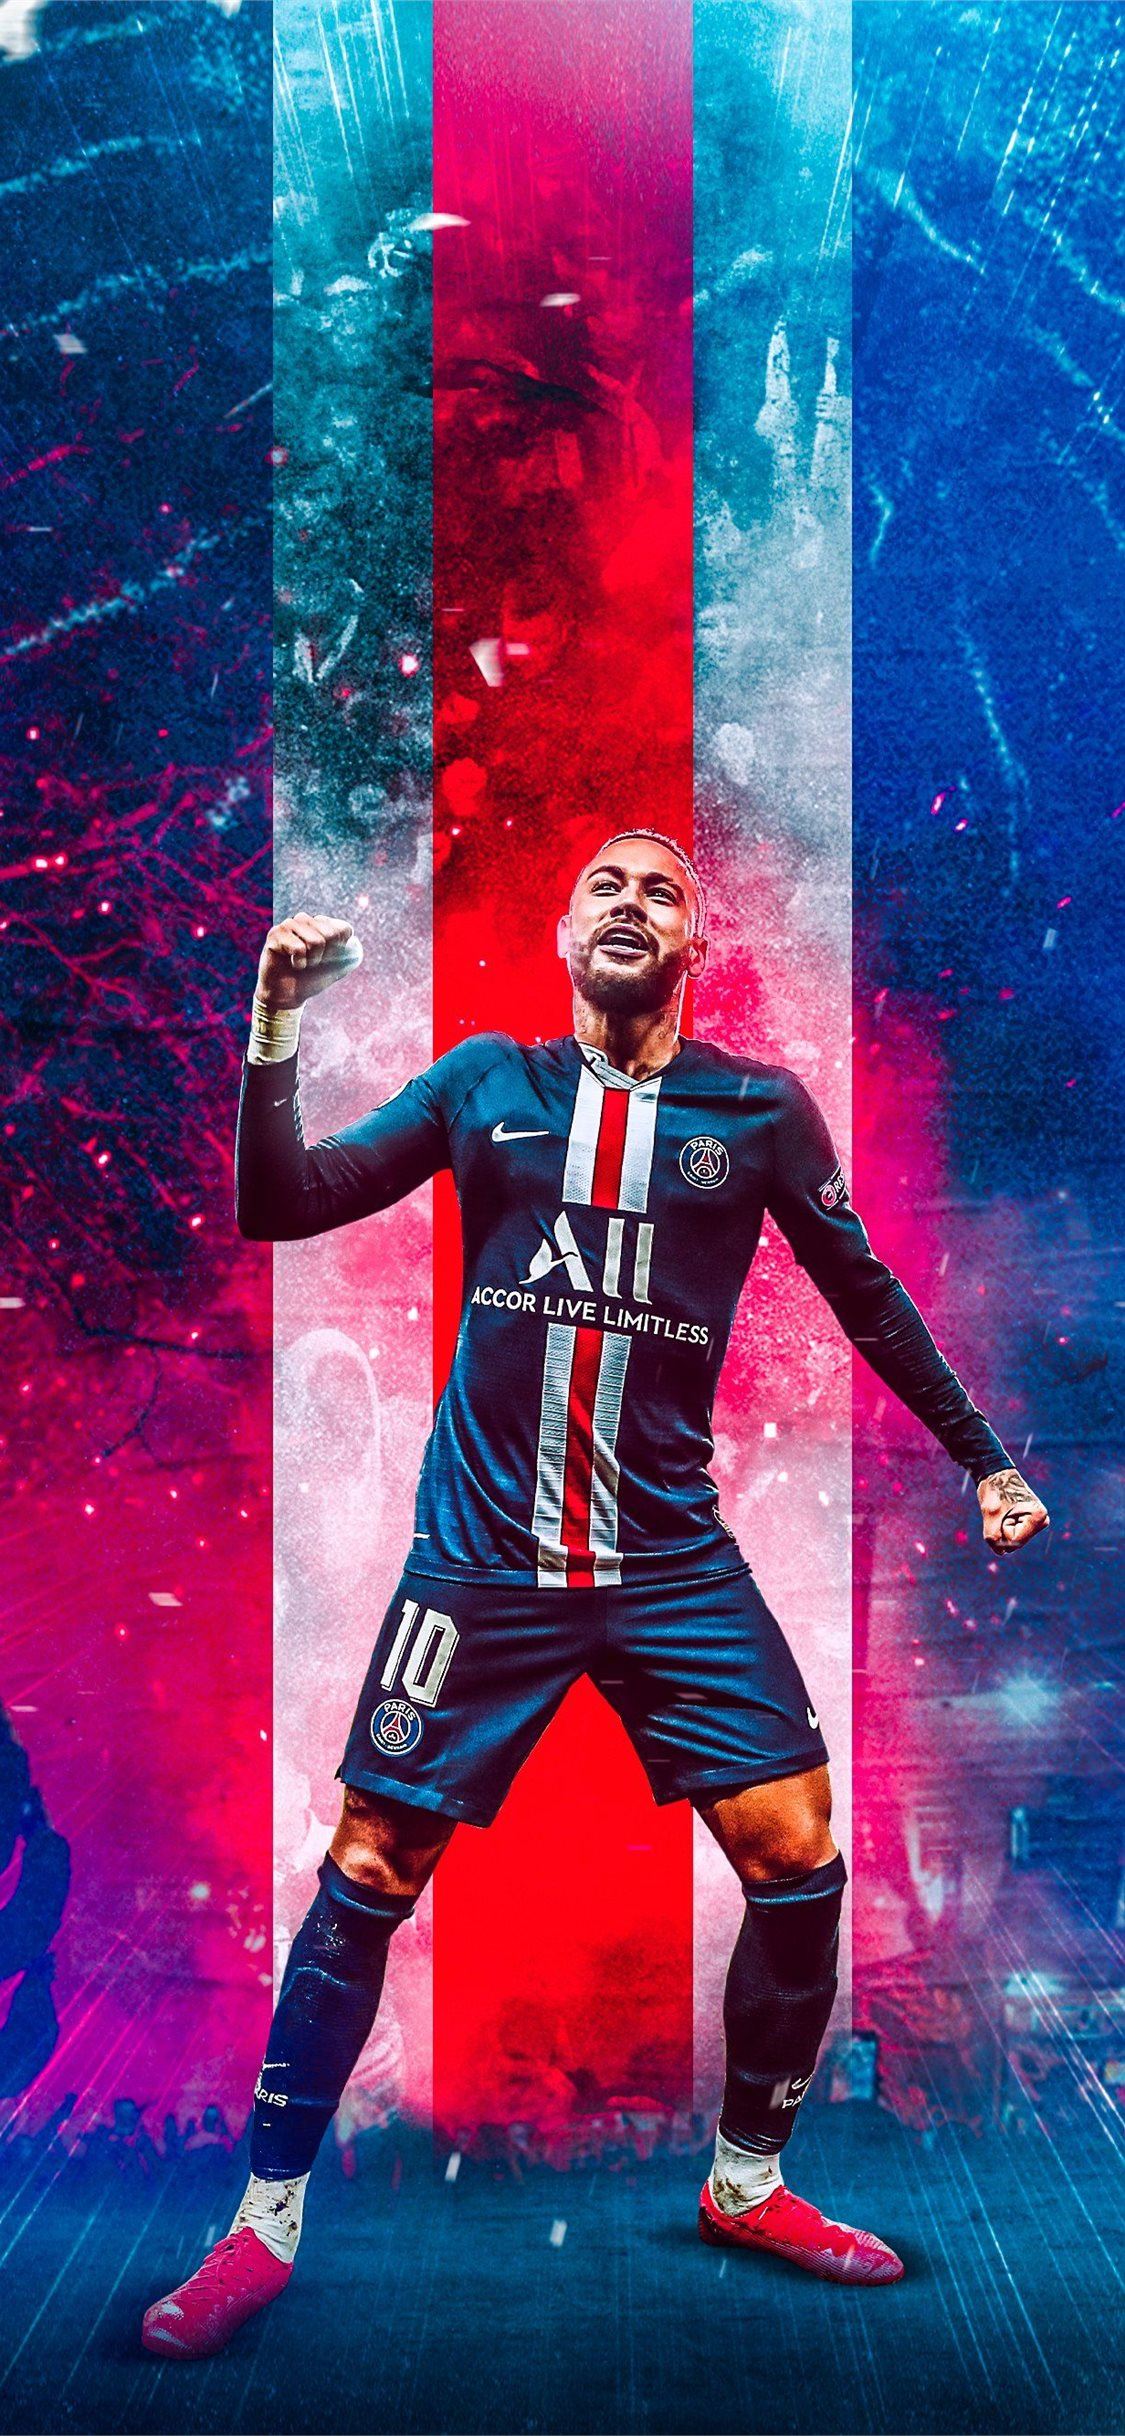 POPPY, hình nền PSG với thiết kế dễ thương và tinh tế sẽ làm bạn hạnh phúc ngay từ khi nhìn thấy. Hình ảnh về Poppy sẽ giúp bạn tìm lại cảm giác tuổi thơ và cùng Paris Saint-Germain vô địch trong mùa giải mới. Hãy cùng xem và cổ vũ cho đội bóng của chúng ta.